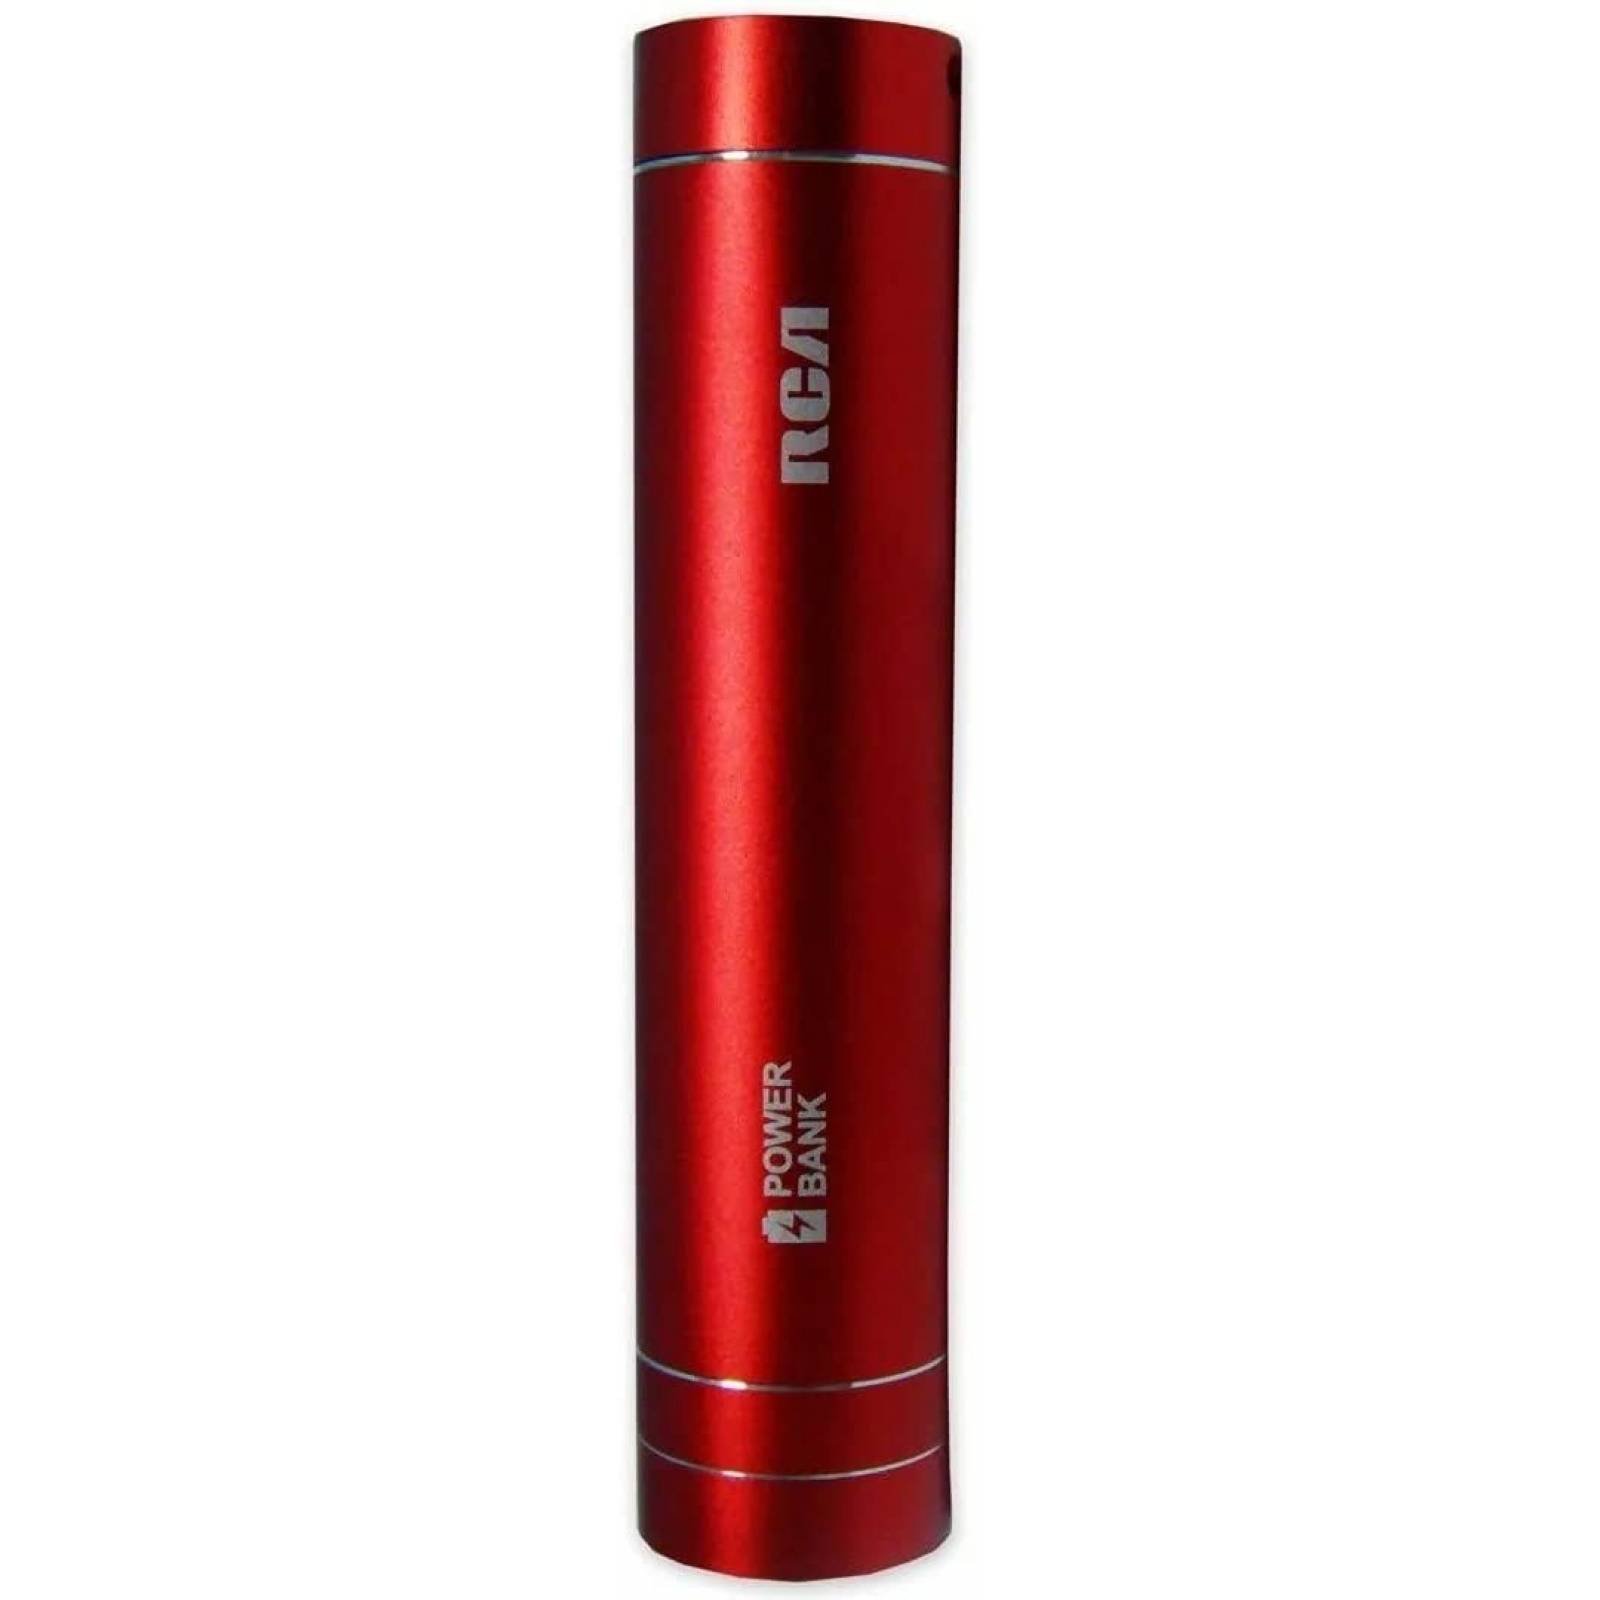 Batería de respaldo p/celular 2600 Mah color rojo marca Rca